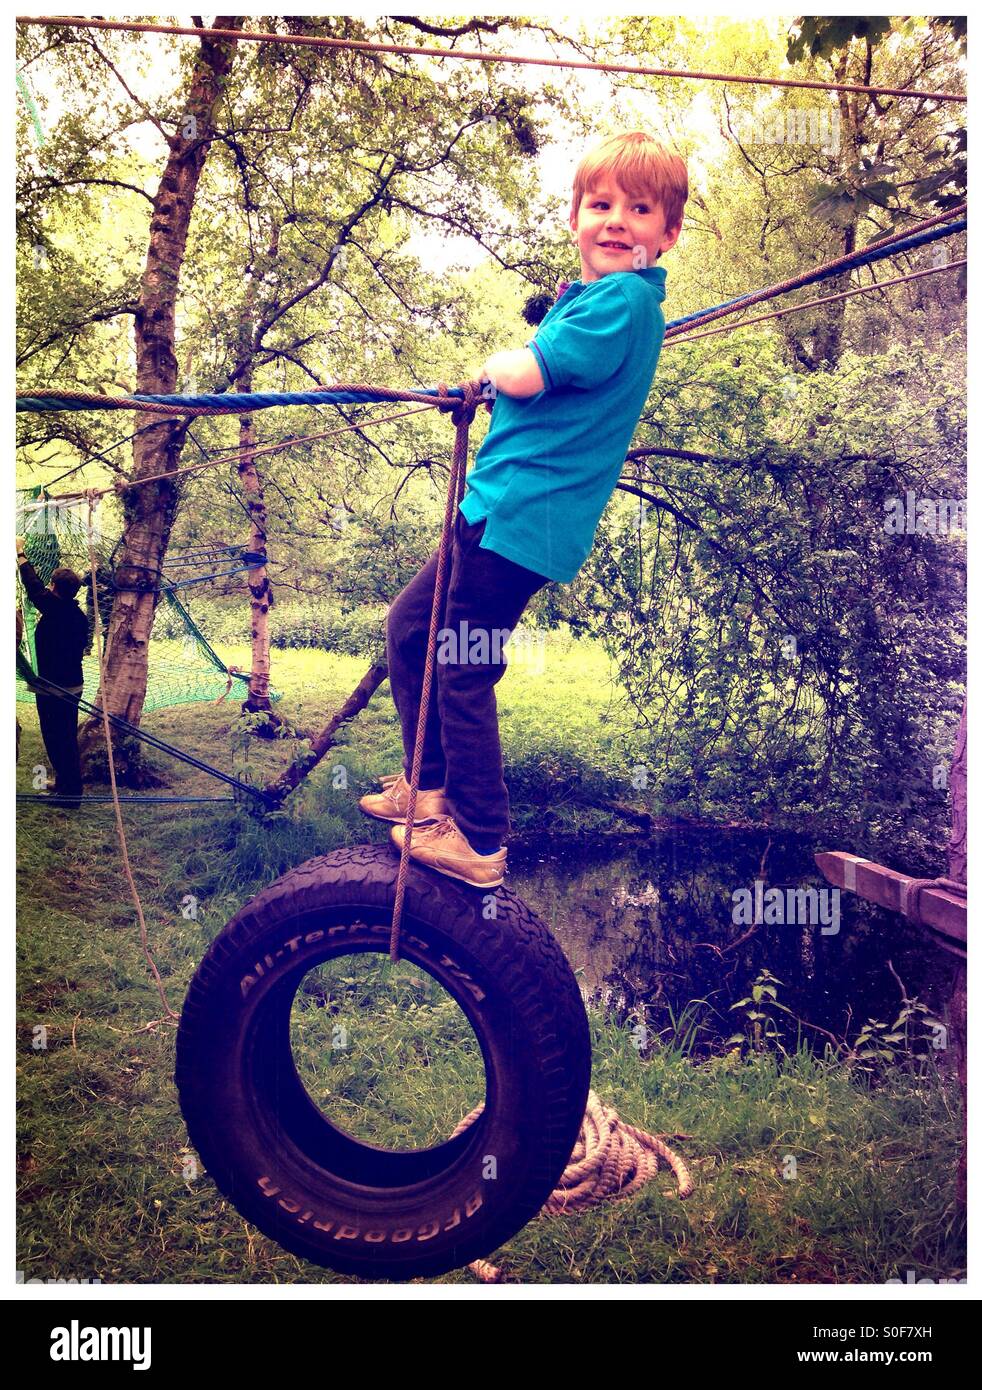 Boy swinging sur une corde et tire. Cours d'aventure. Parcours du combattant. Jeux forestiers Banque D'Images